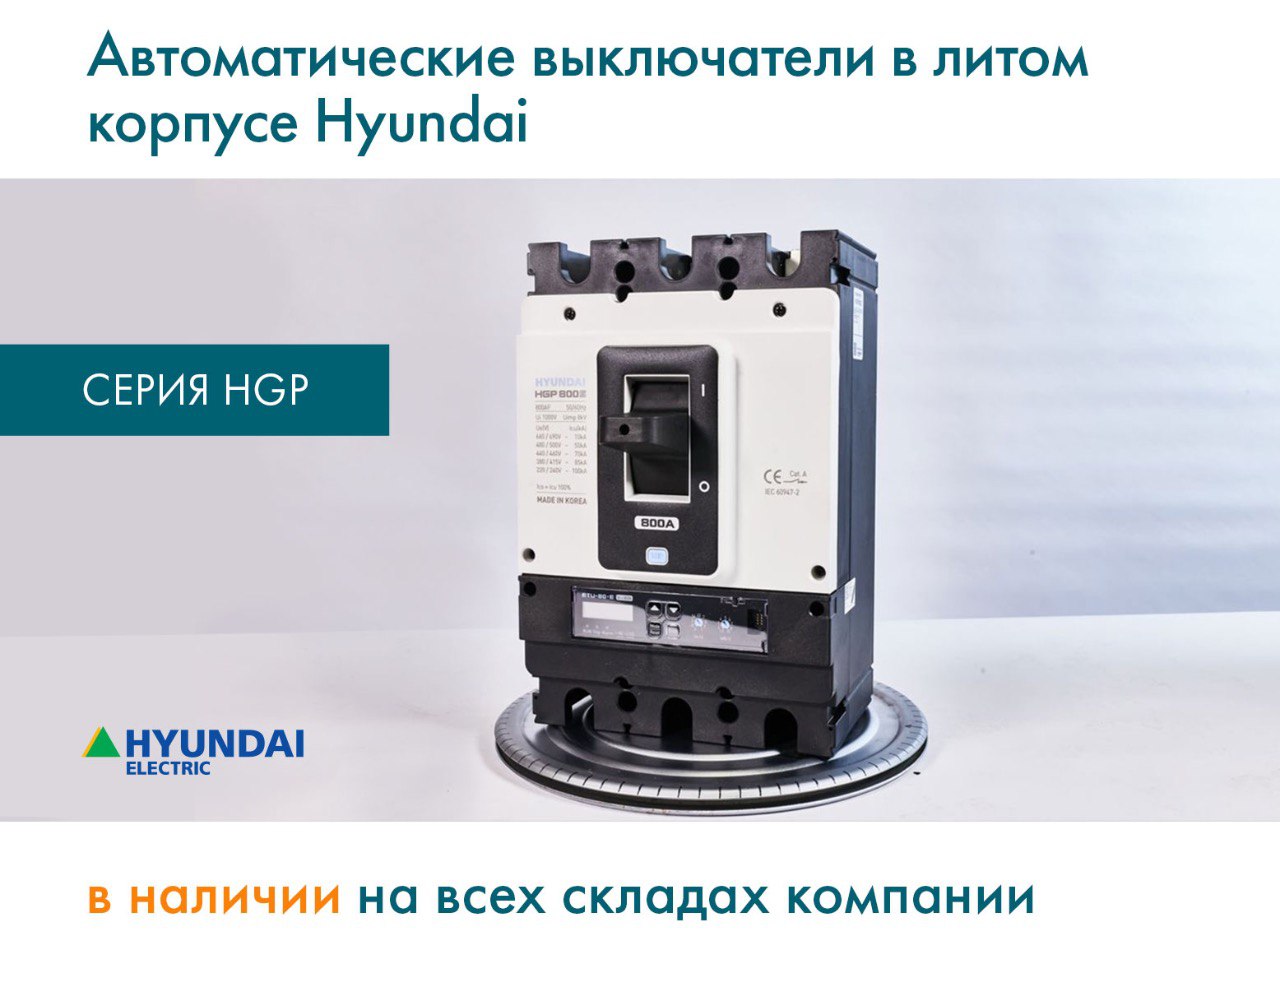 Автоматические выключатели в литом корпусе Hyundai серии HGP в наличии на всех складах компании